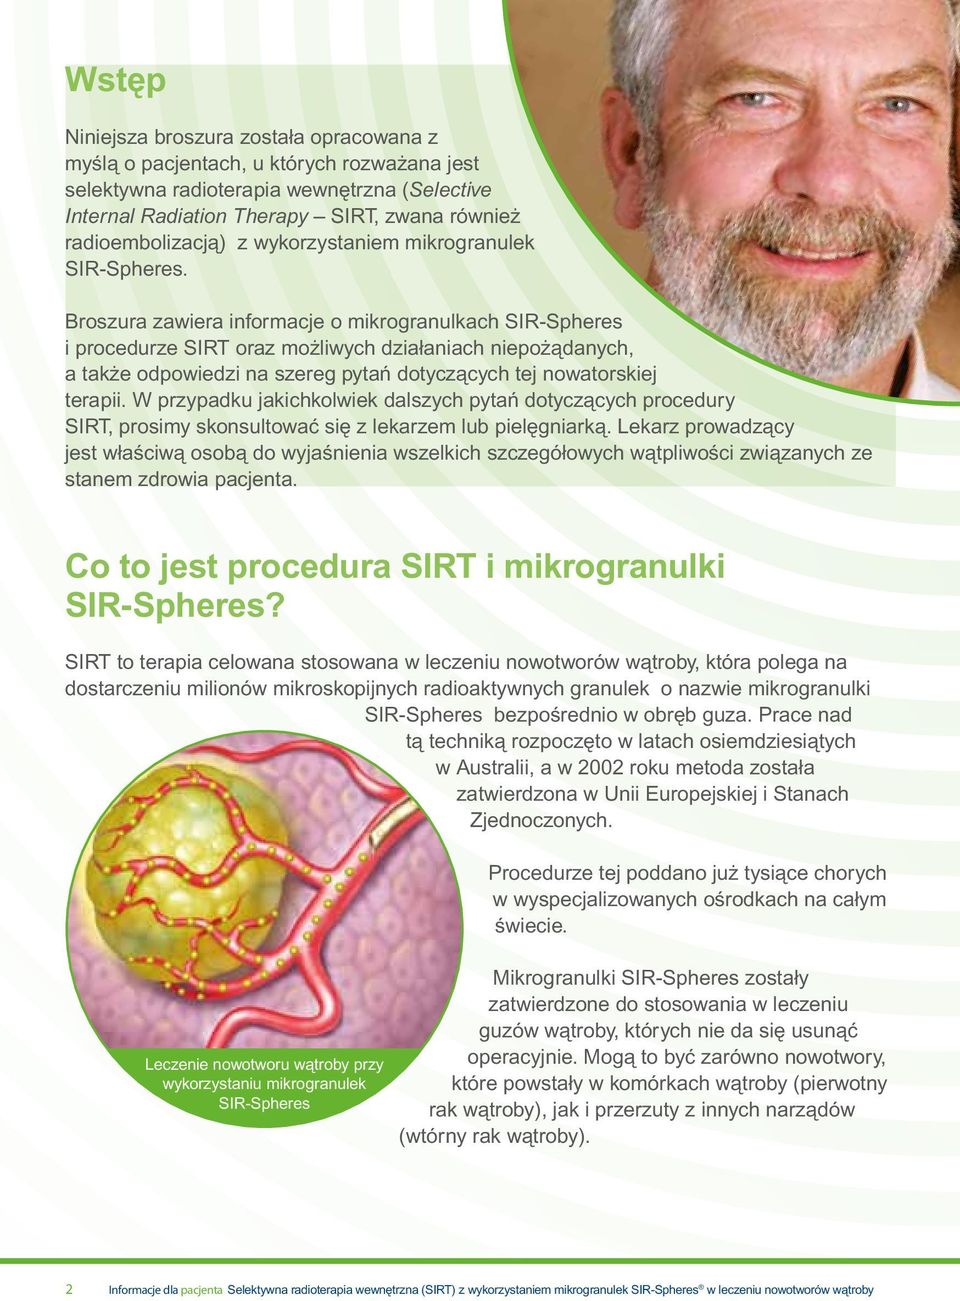 Broszura zawiera informacje o mikrogranulkach SIR-Spheres i procedurze SIRT oraz możliwych działaniach niepożądanych, a także odpowiedzi na szereg pytań dotyczących tej nowatorskiej terapii.